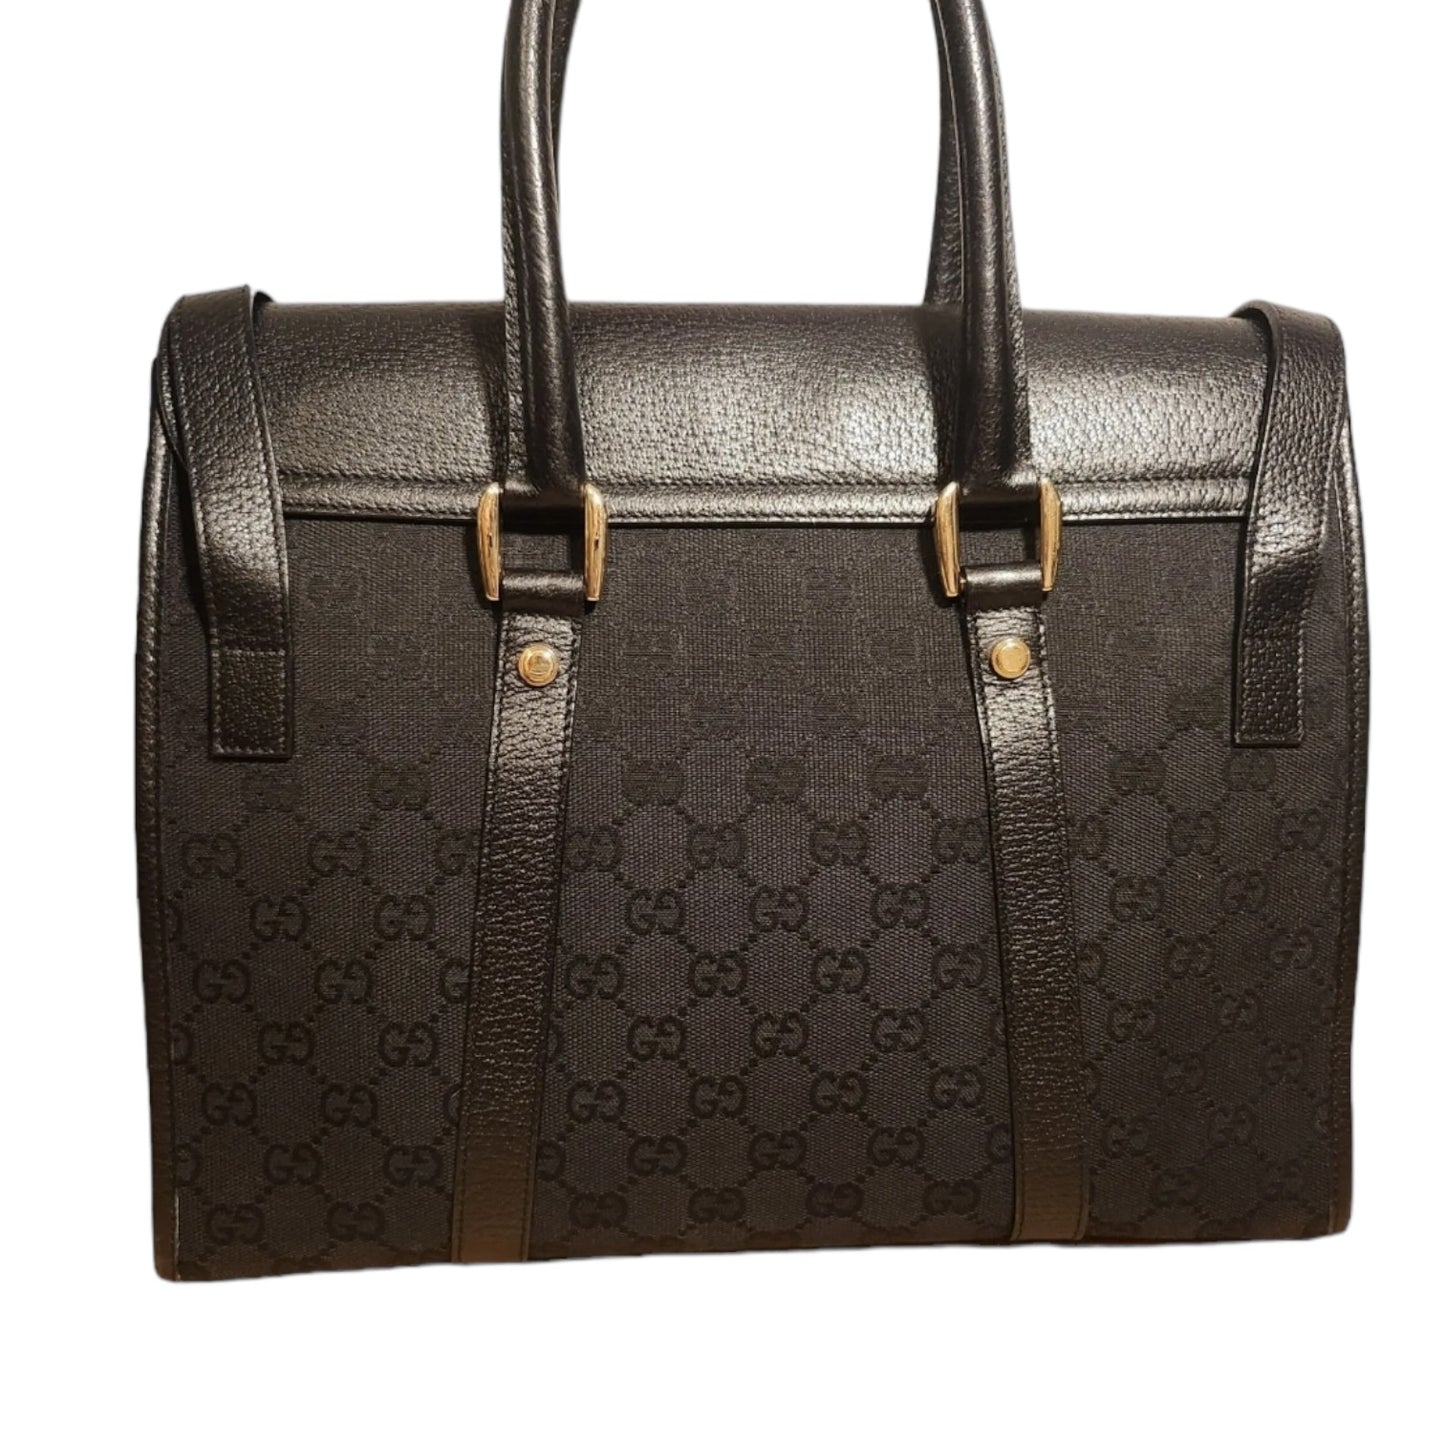 Gucci Monogram Canvas Handbag